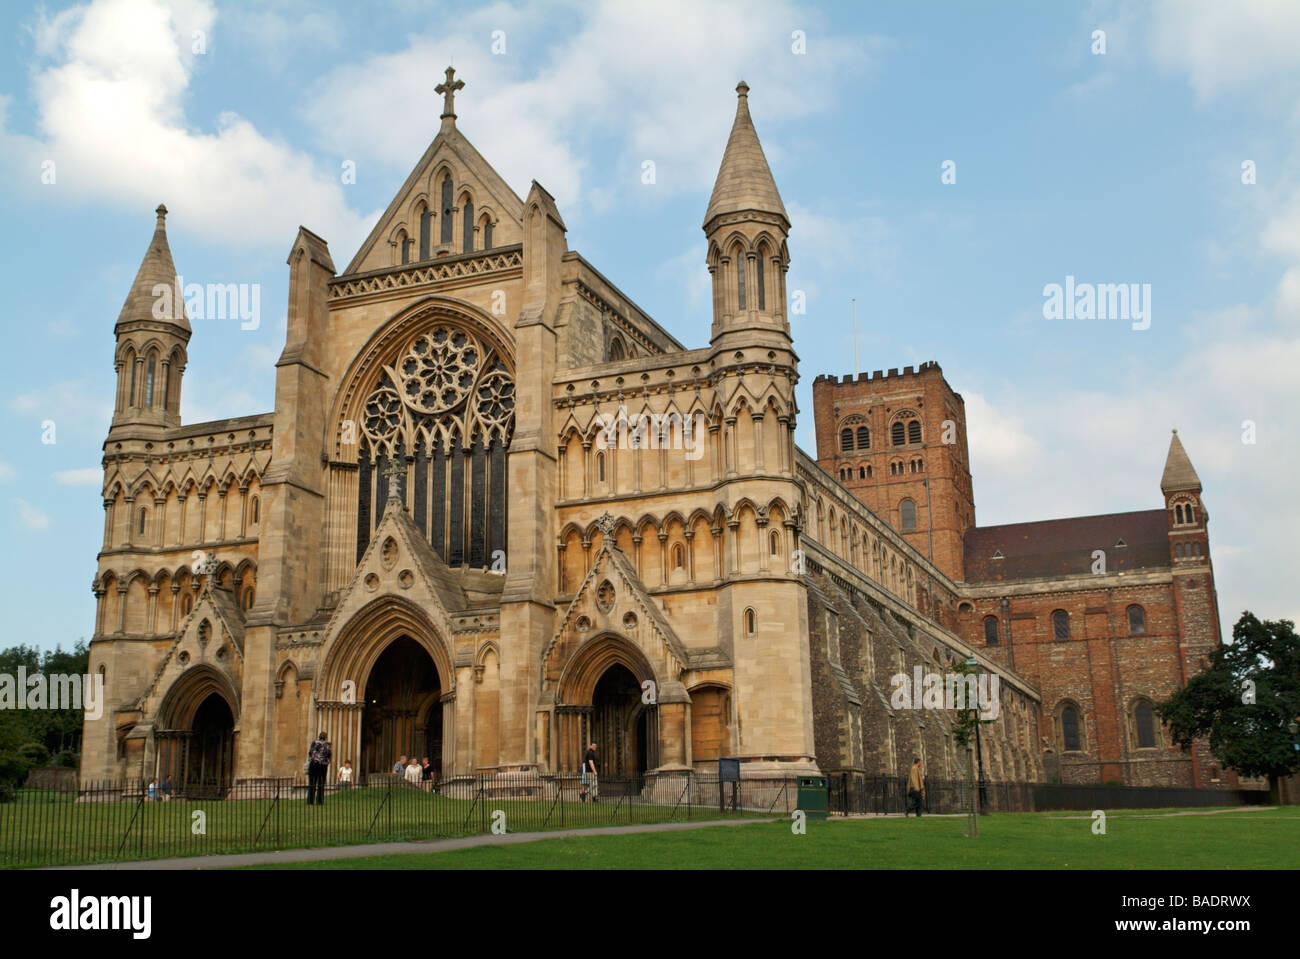 L'extrémité ouest de la cathédrale et église abbatiale de St Alban, St Albans, Hertfordshire, England, UK. Banque D'Images